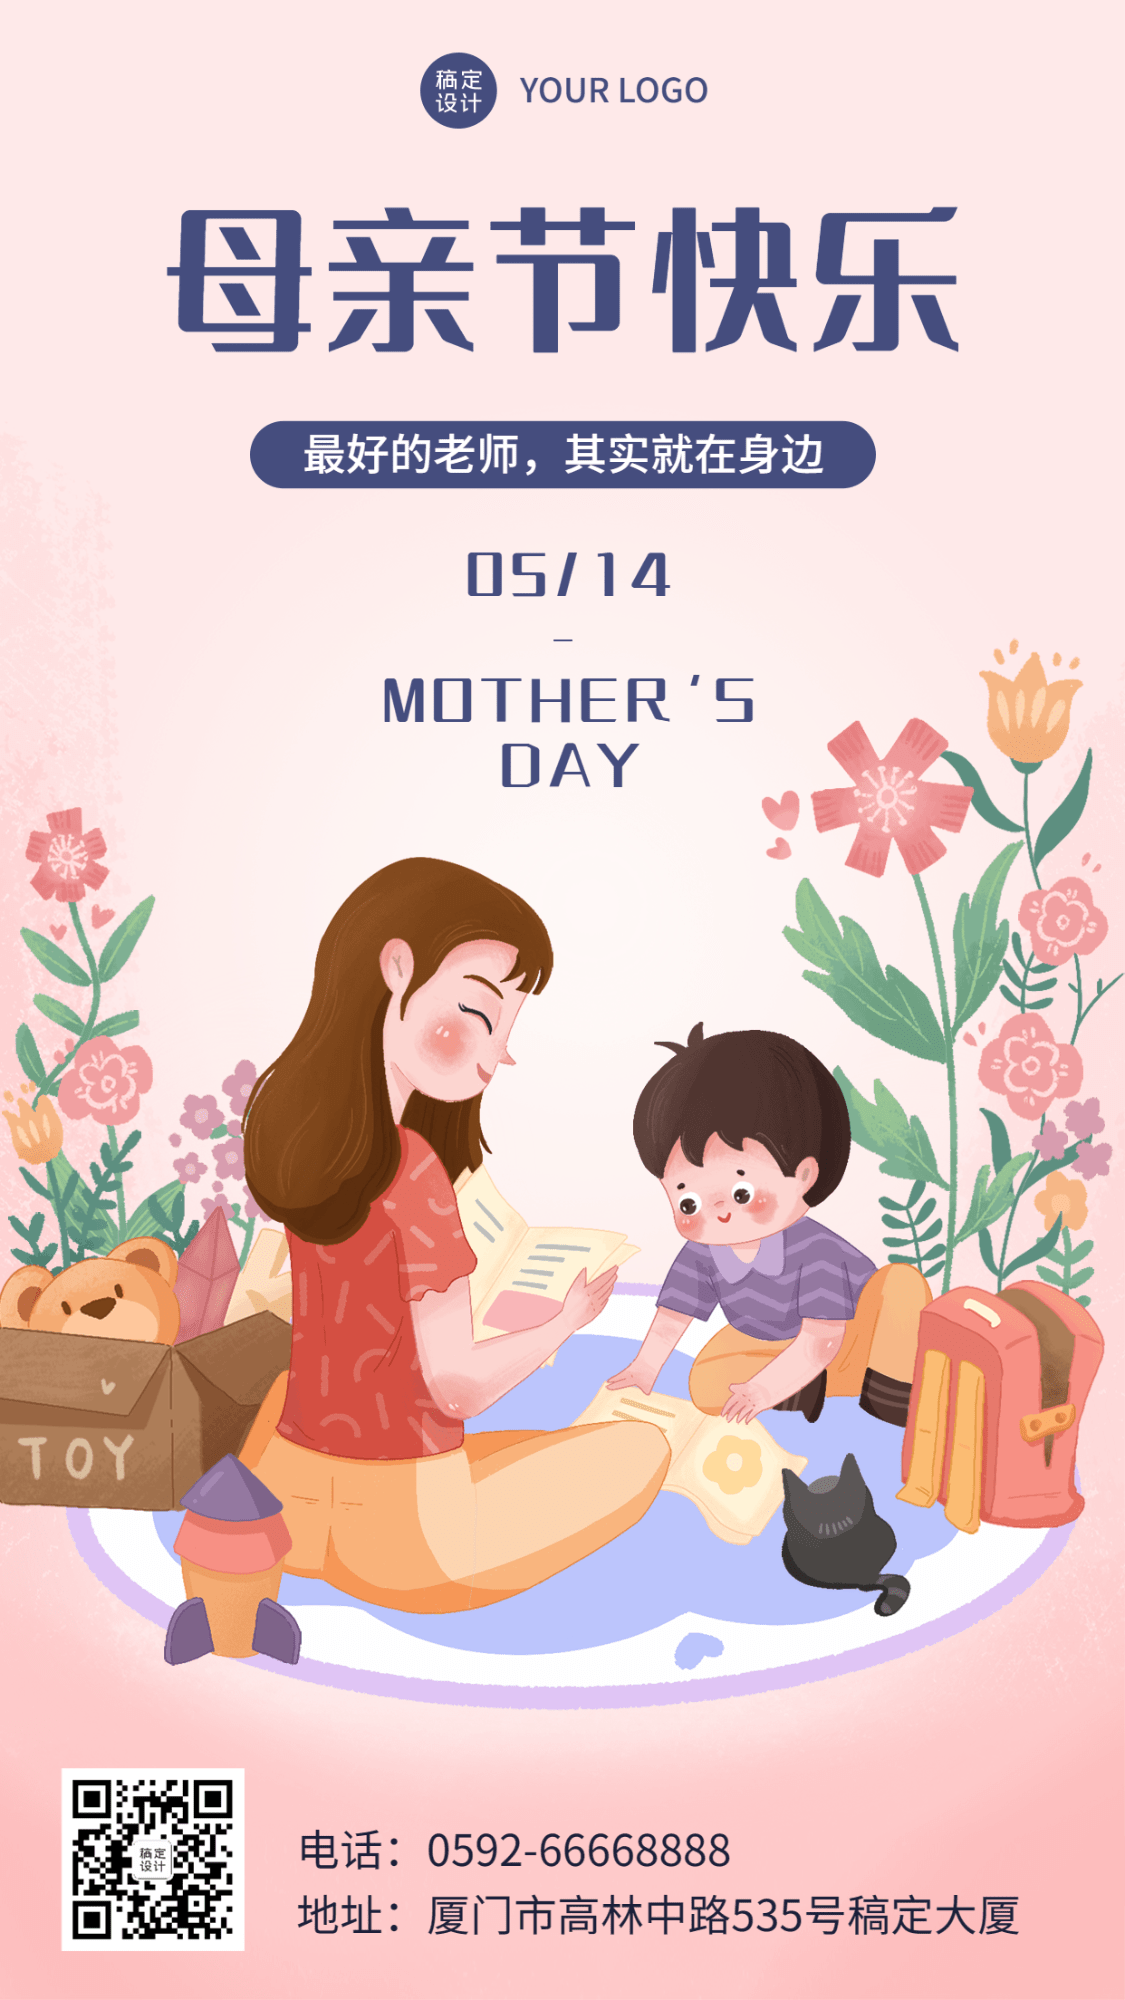 母亲节祝福教育行业手机海报